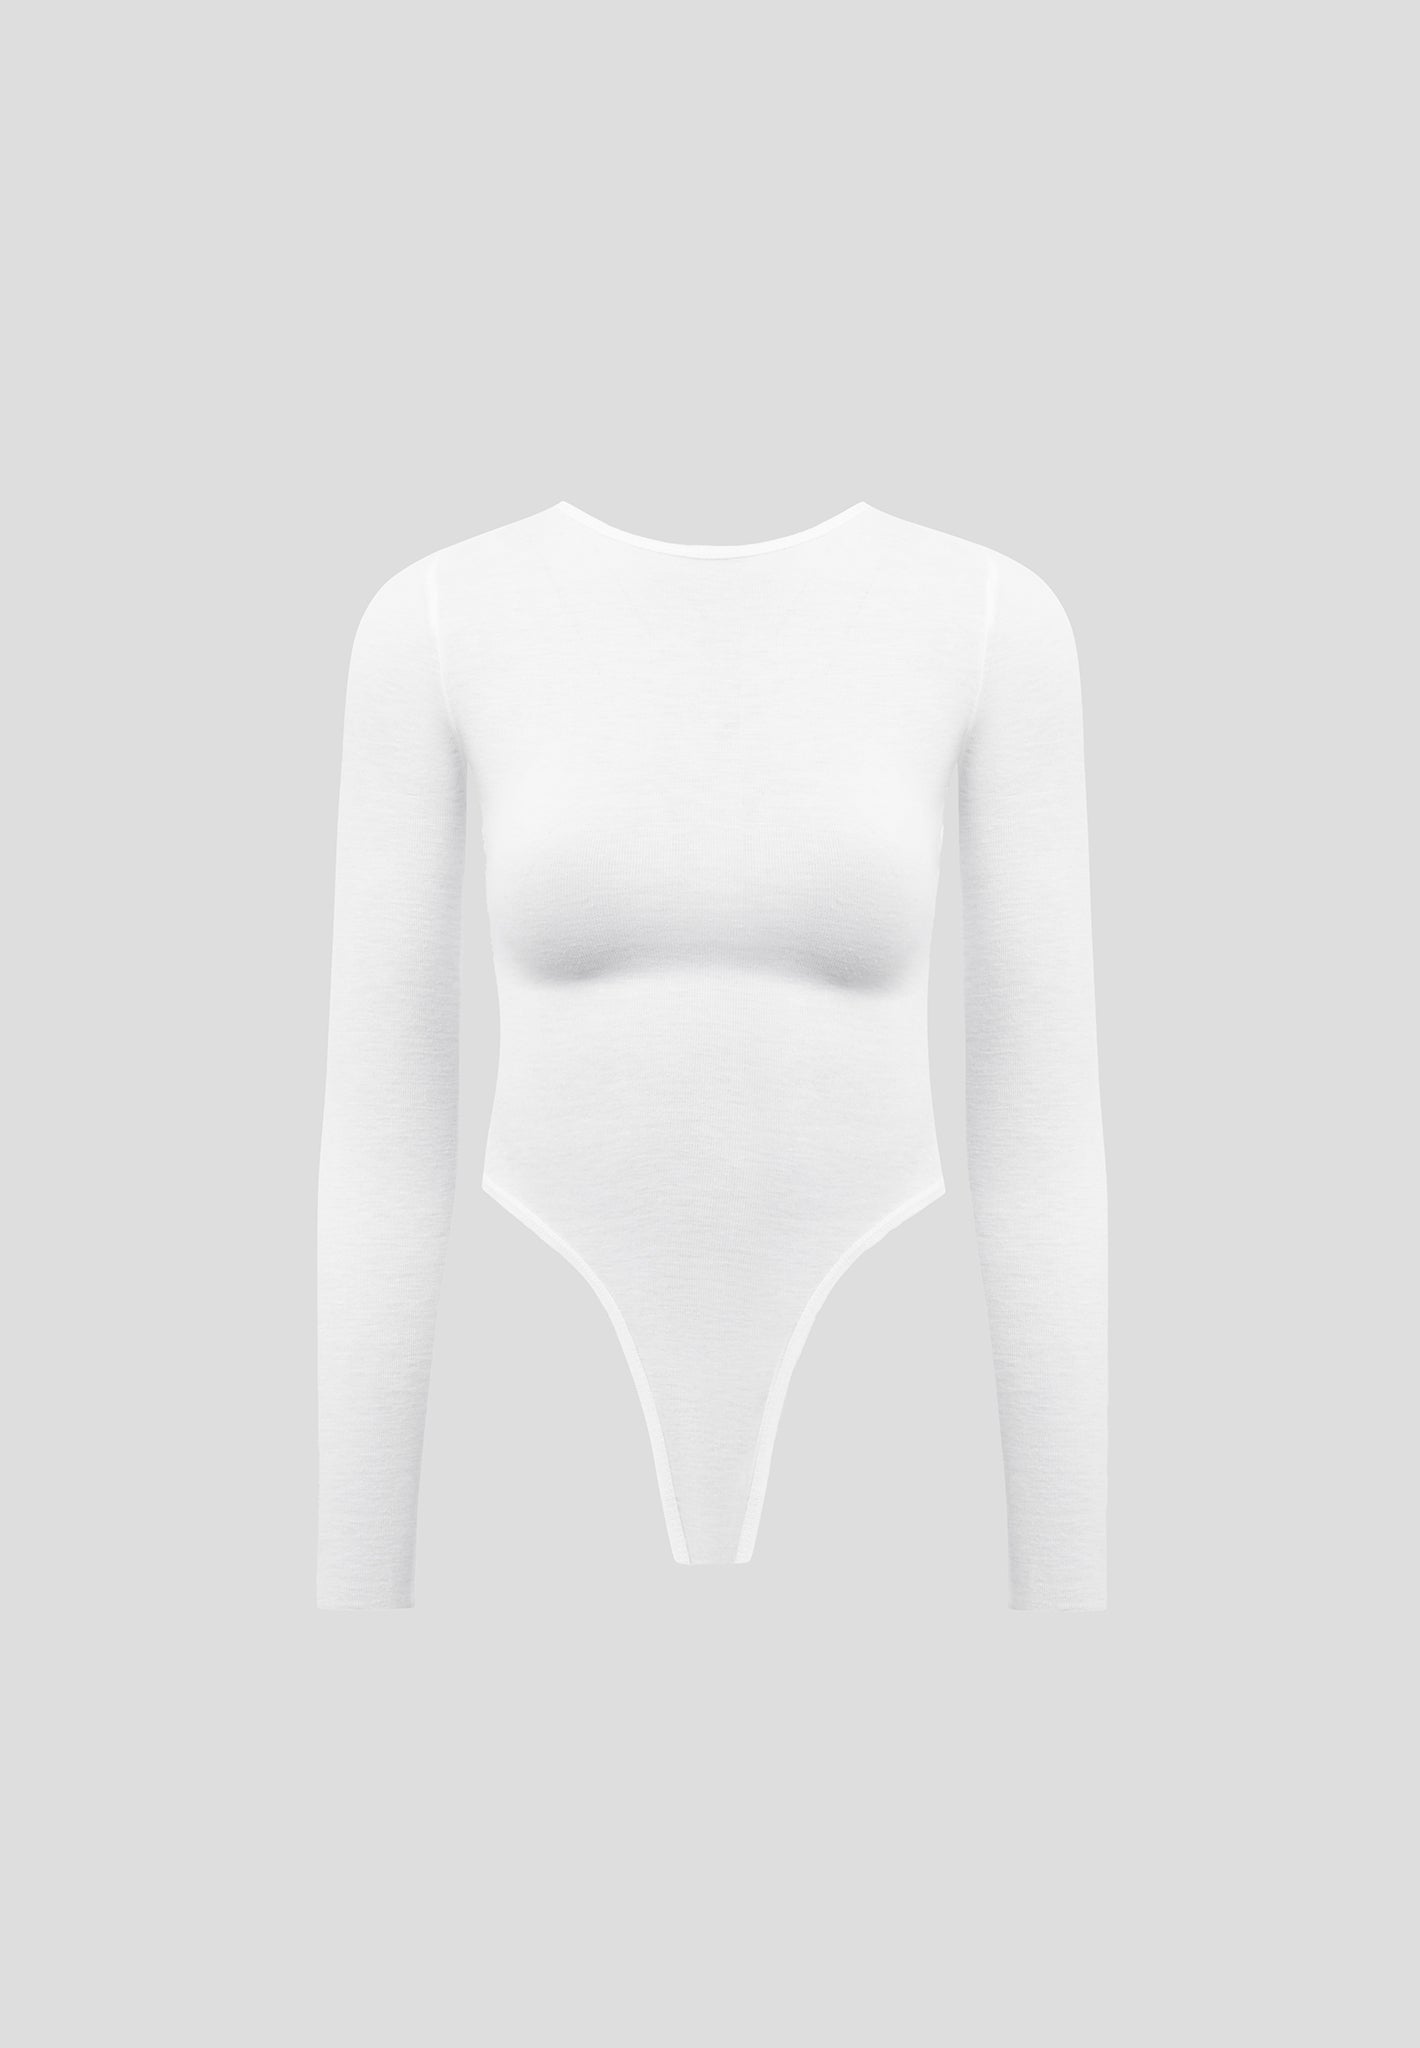 https://ca.manieredevoir.com/cdn/shop/files/Eternelle-Sheer-Long-Sleeve-Bodysuit-White2.jpg?v=1700222404